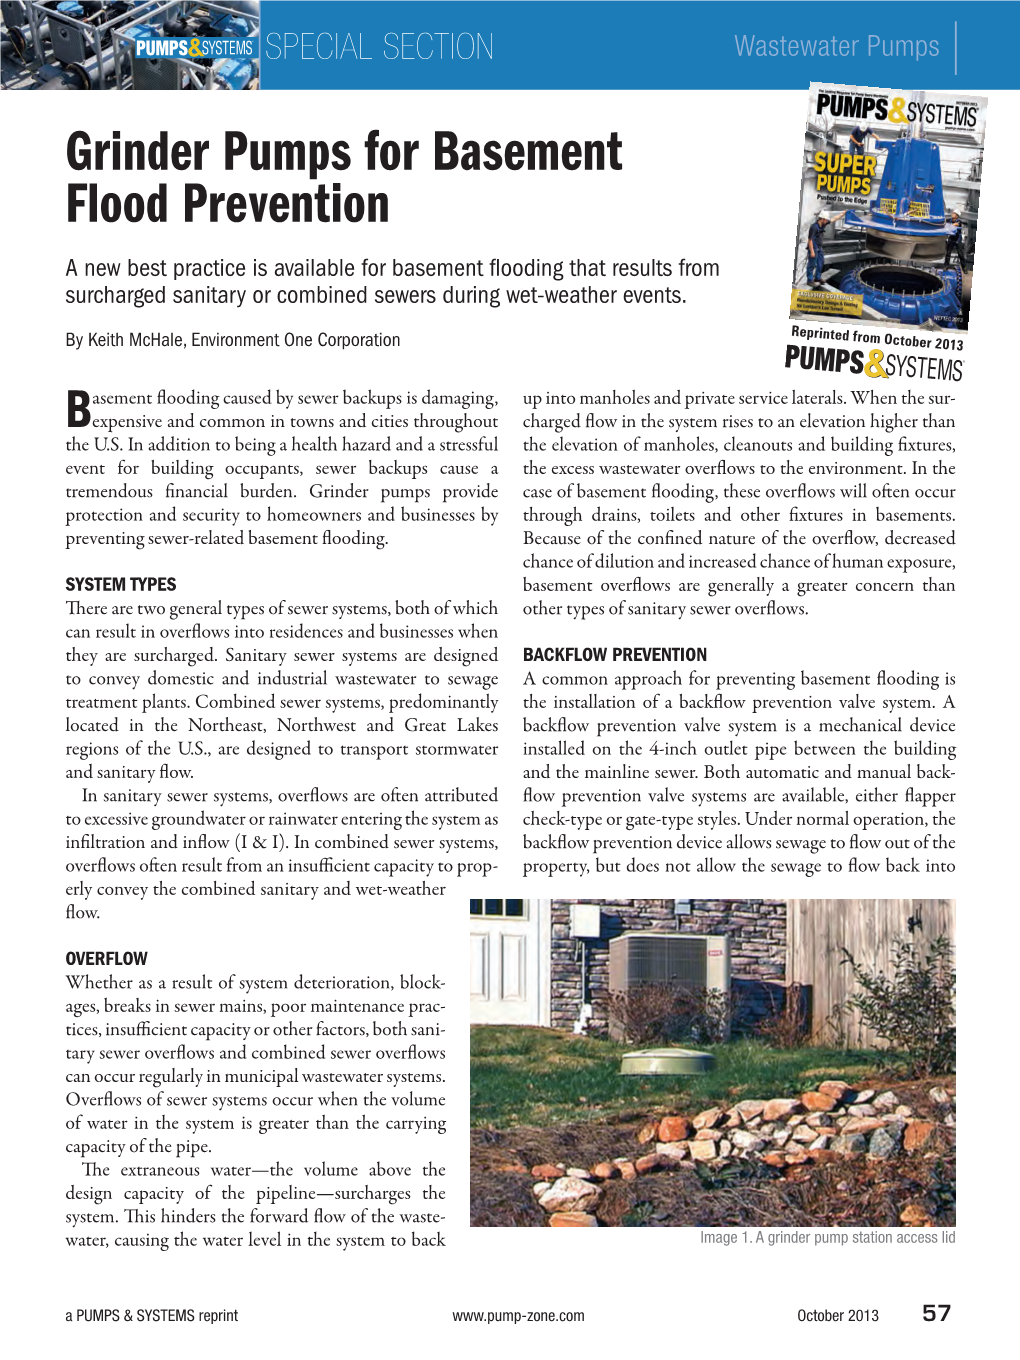 Grinder Pumps for Basement Flood Prevention